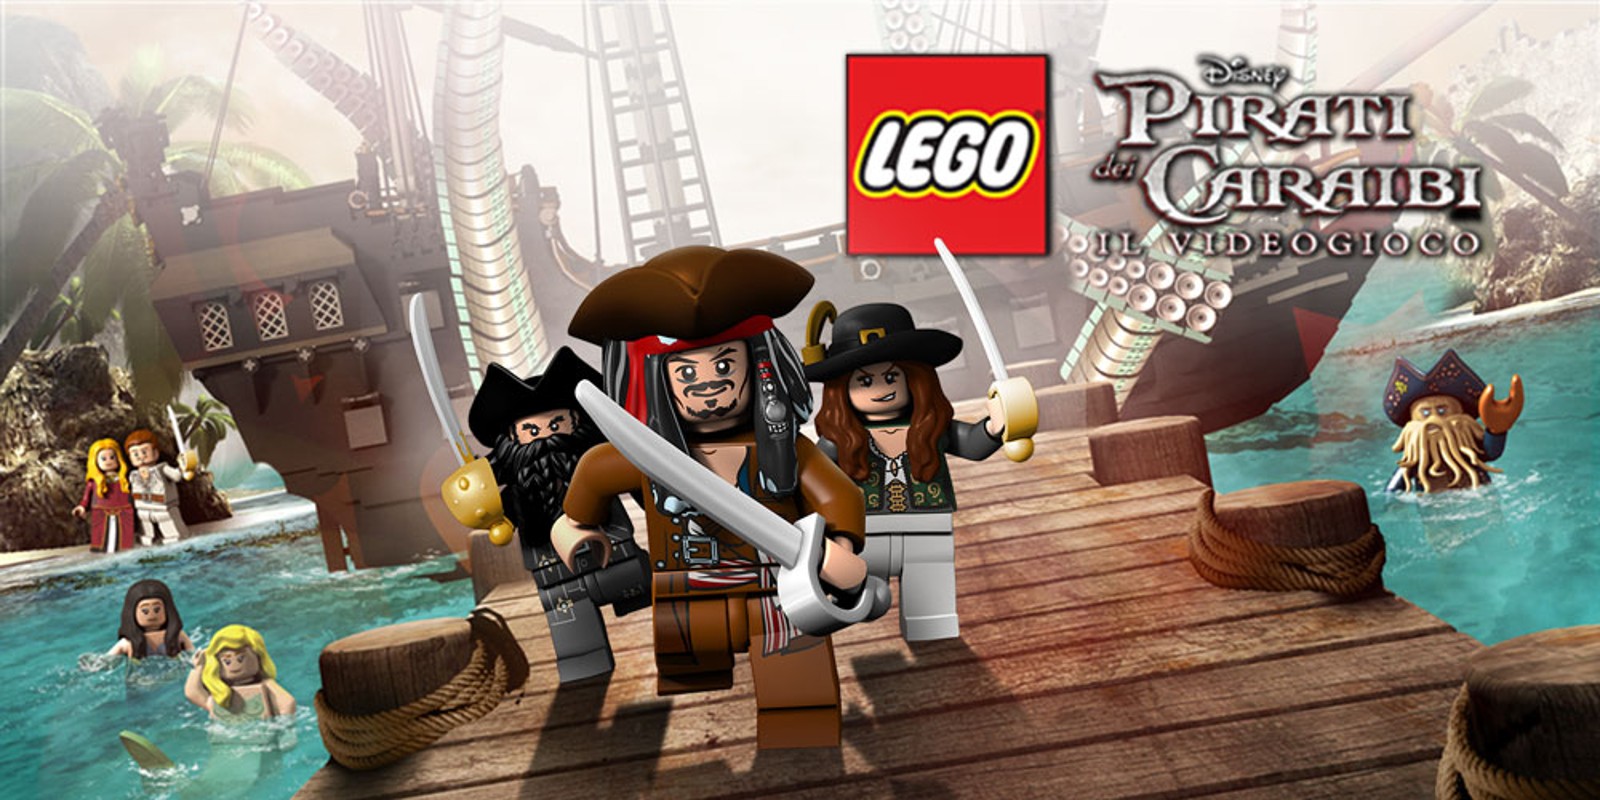 LEGO® Pirati dei Caraibi Il Videogioco